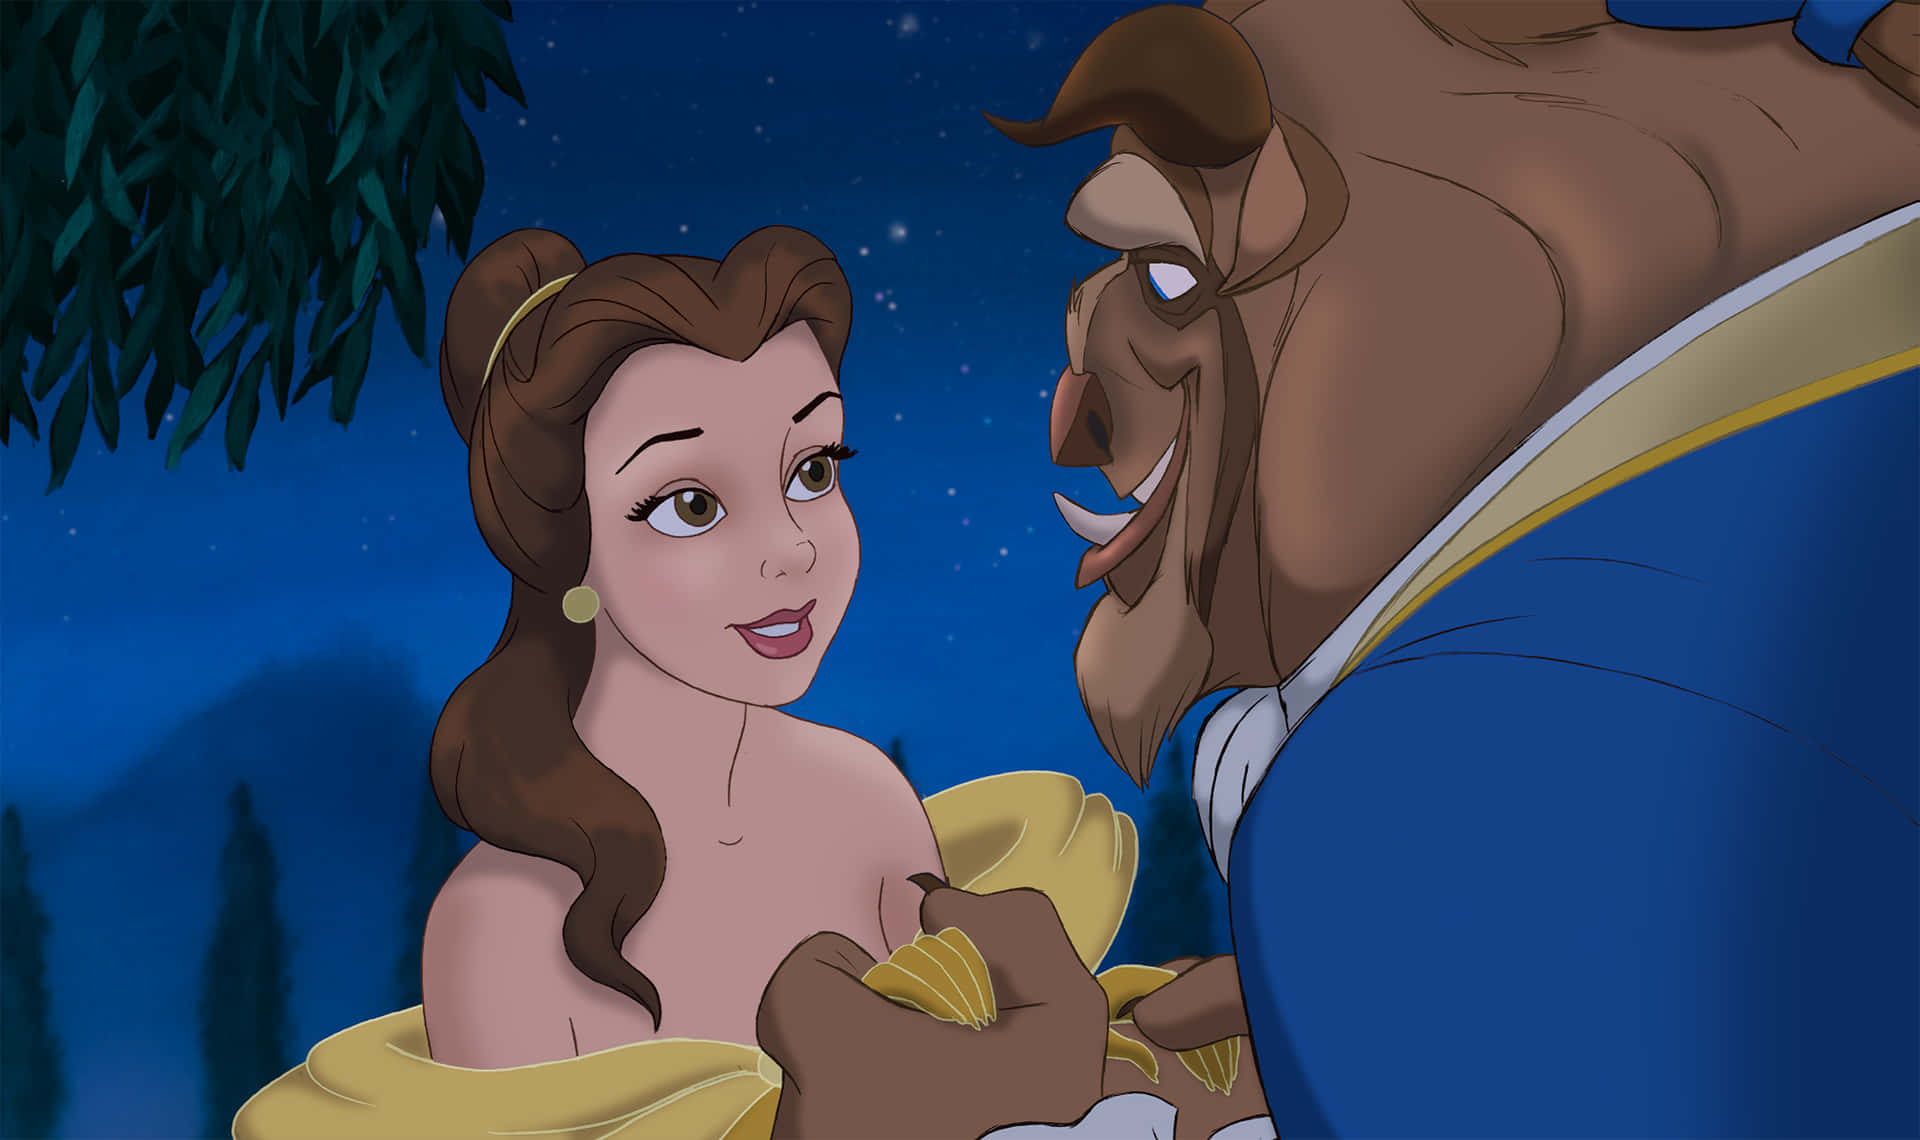 Gladgenforening | Beskrivelse: Belle (emma Watson) Genforenes Med Udyret (dan Stevens) I Den Live-action Remake Af Disney's Klassiske Skønheden Og Udyret Fra 2017.